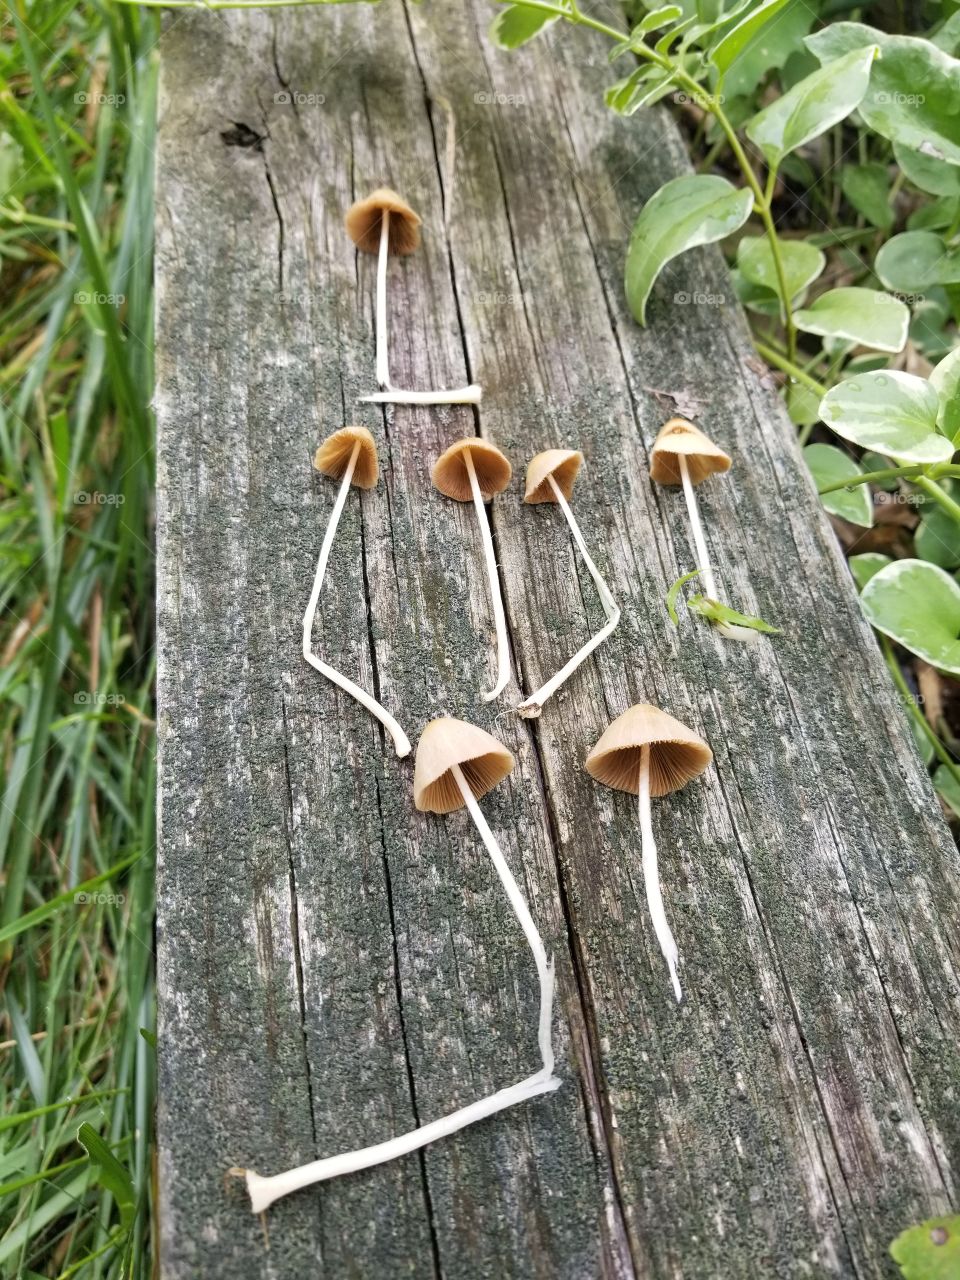 The Mushrooms